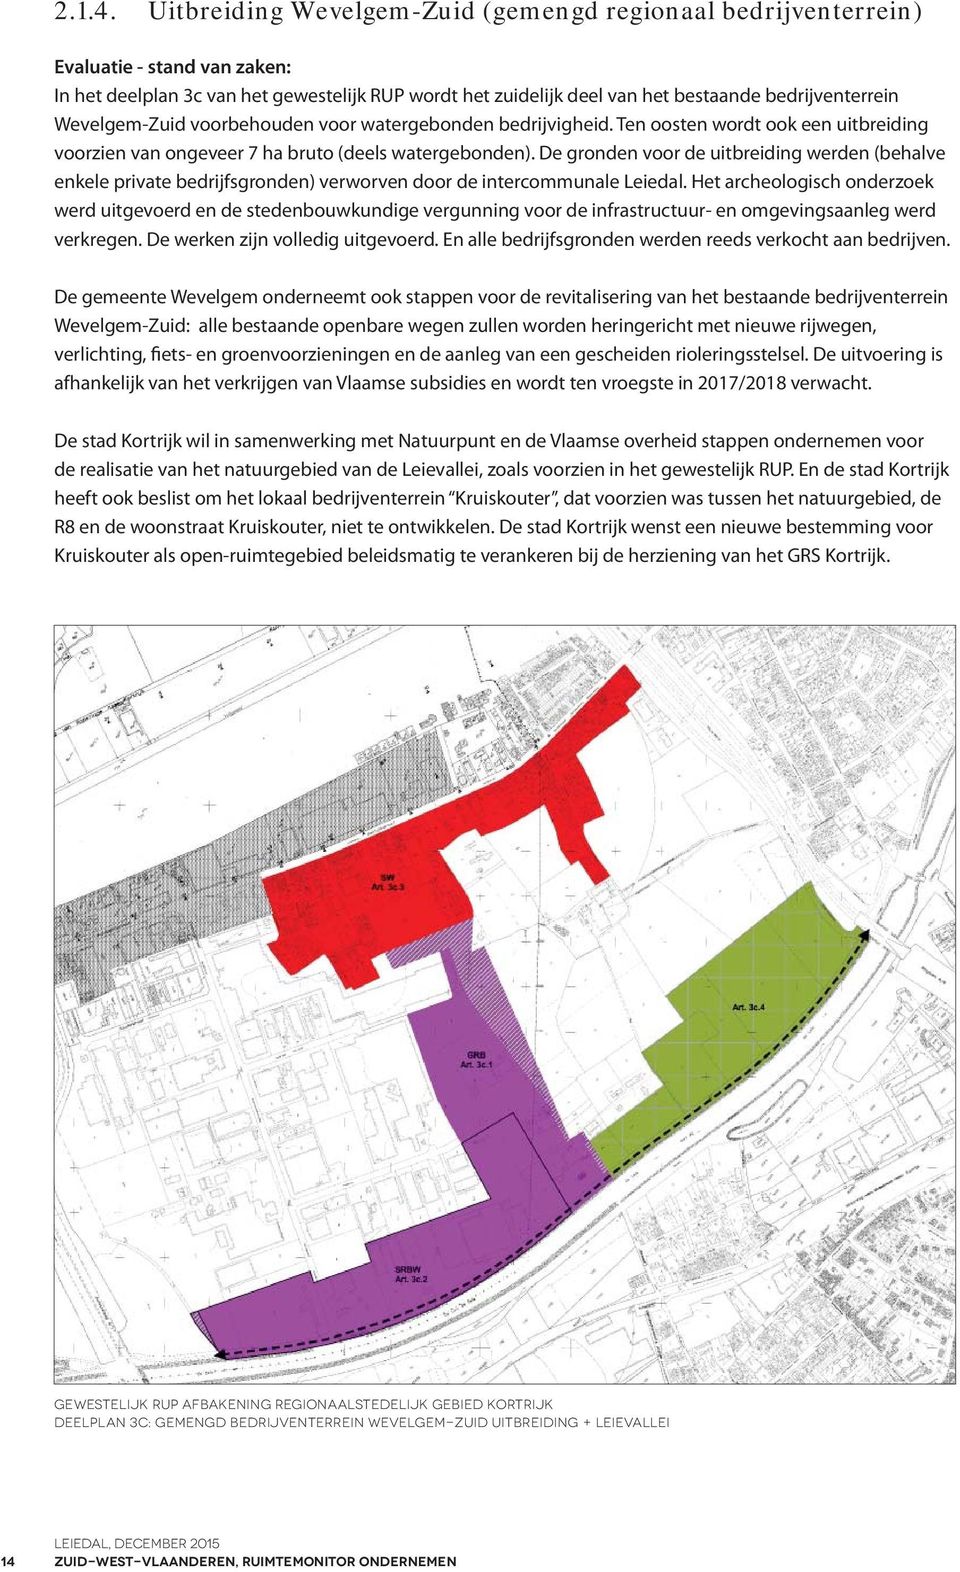 Wevelgem-Zuid voorbehouden voor watergebonden bedrijvigheid. Ten oosten wordt ook een uitbreiding voorzien van ongeveer 7 ha bruto (deels watergebonden).